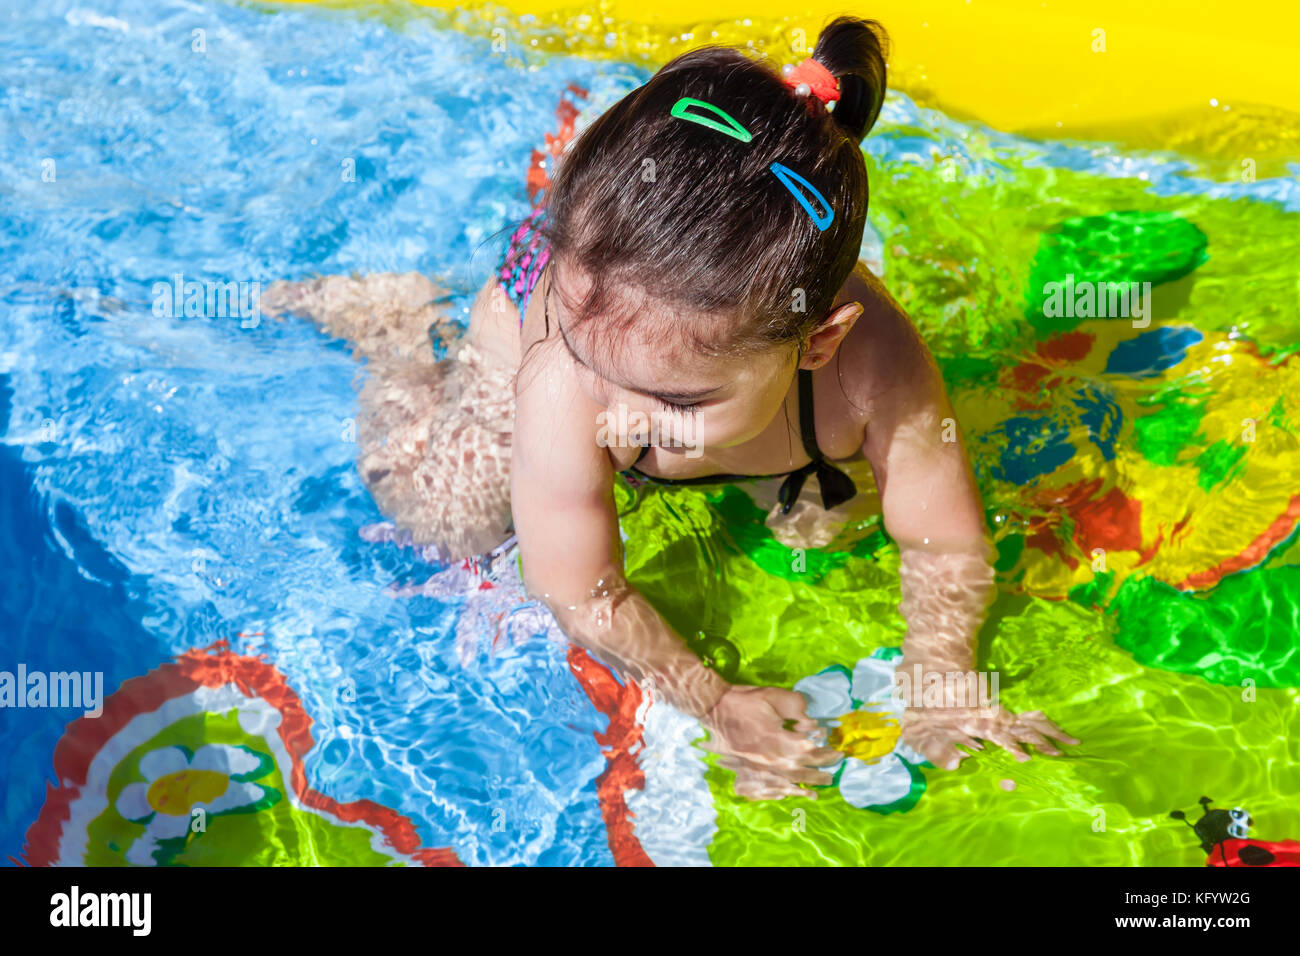 Mignon, heureux, souriant bébé fille en bas âge, nageant, et jouant dans la piscine gonflable colorée d'arrière-cour le jour chaud d'été. Treize mois Banque D'Images